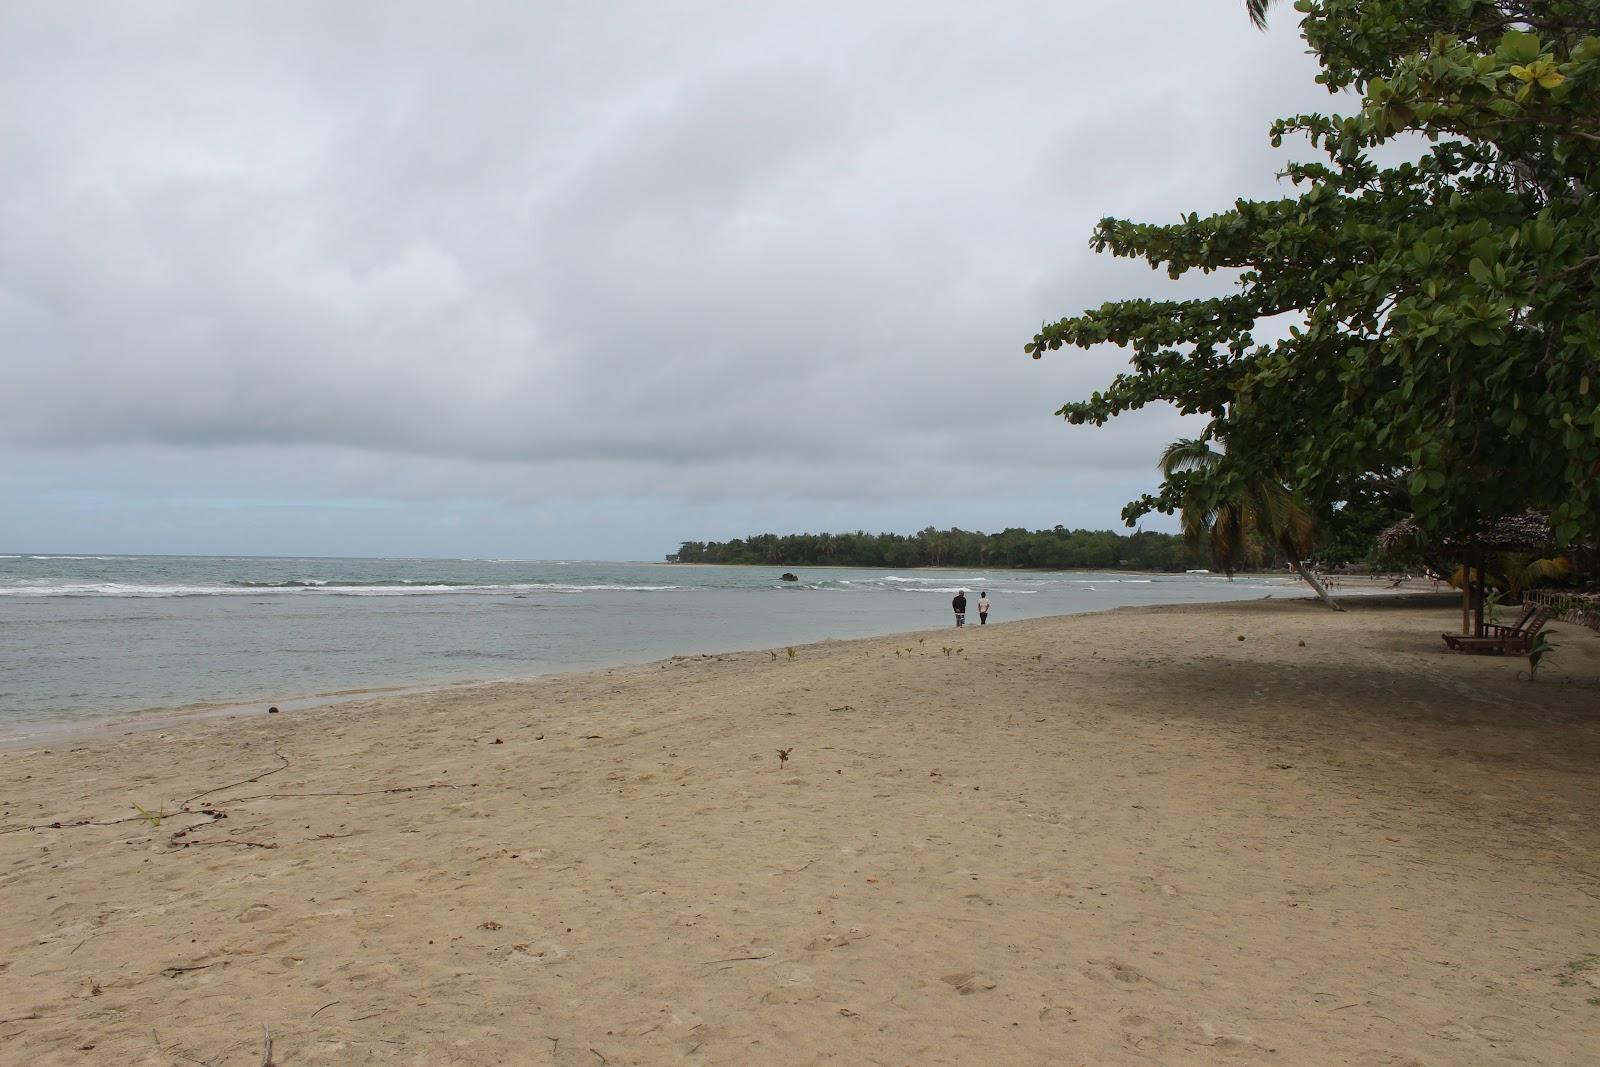 Zdjęcie Mahambo beach obszar udogodnień